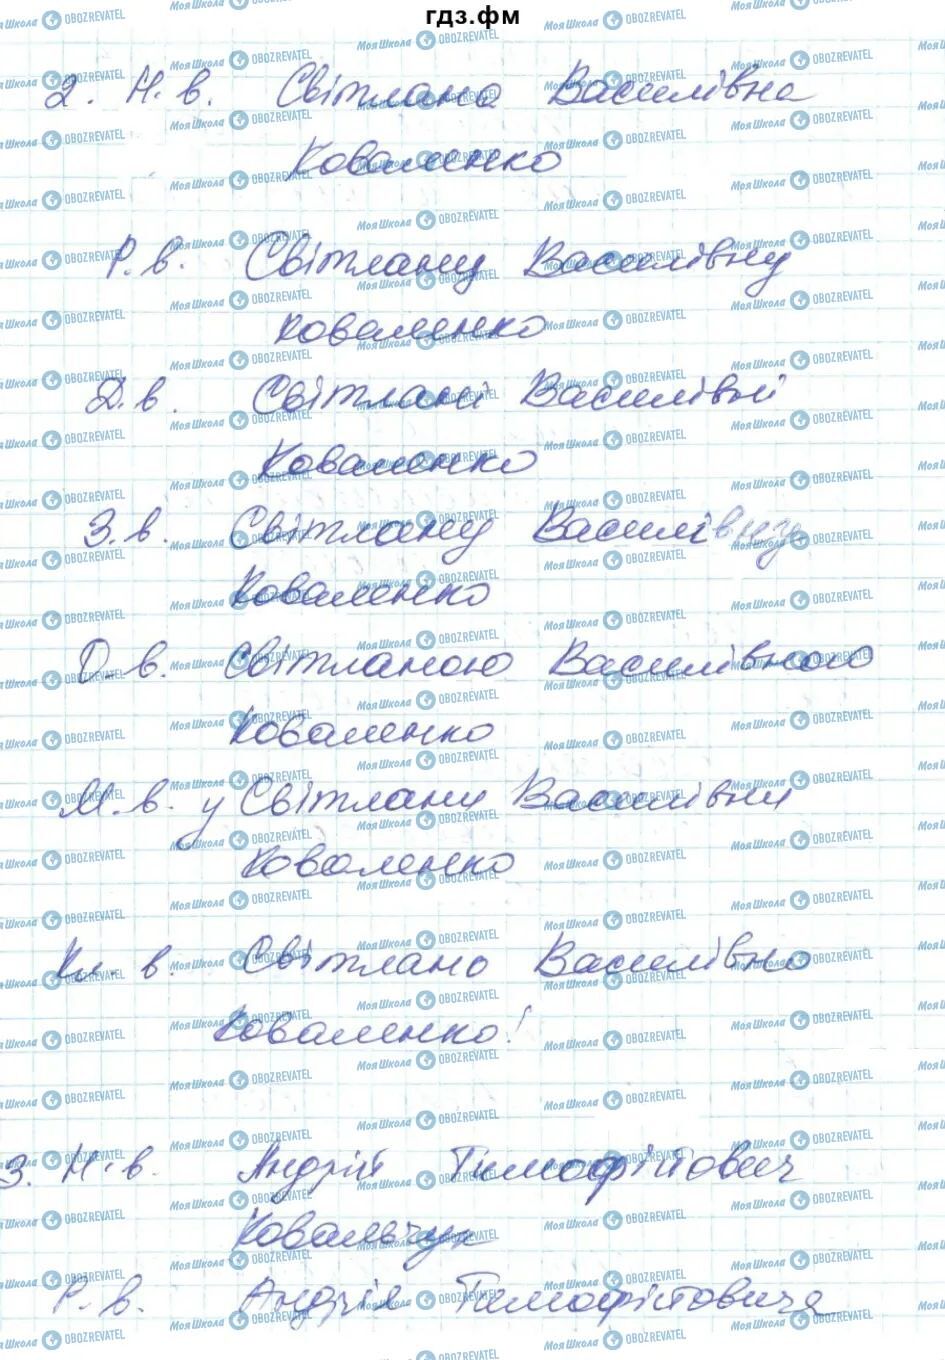 ГДЗ Українська мова 6 клас сторінка 307